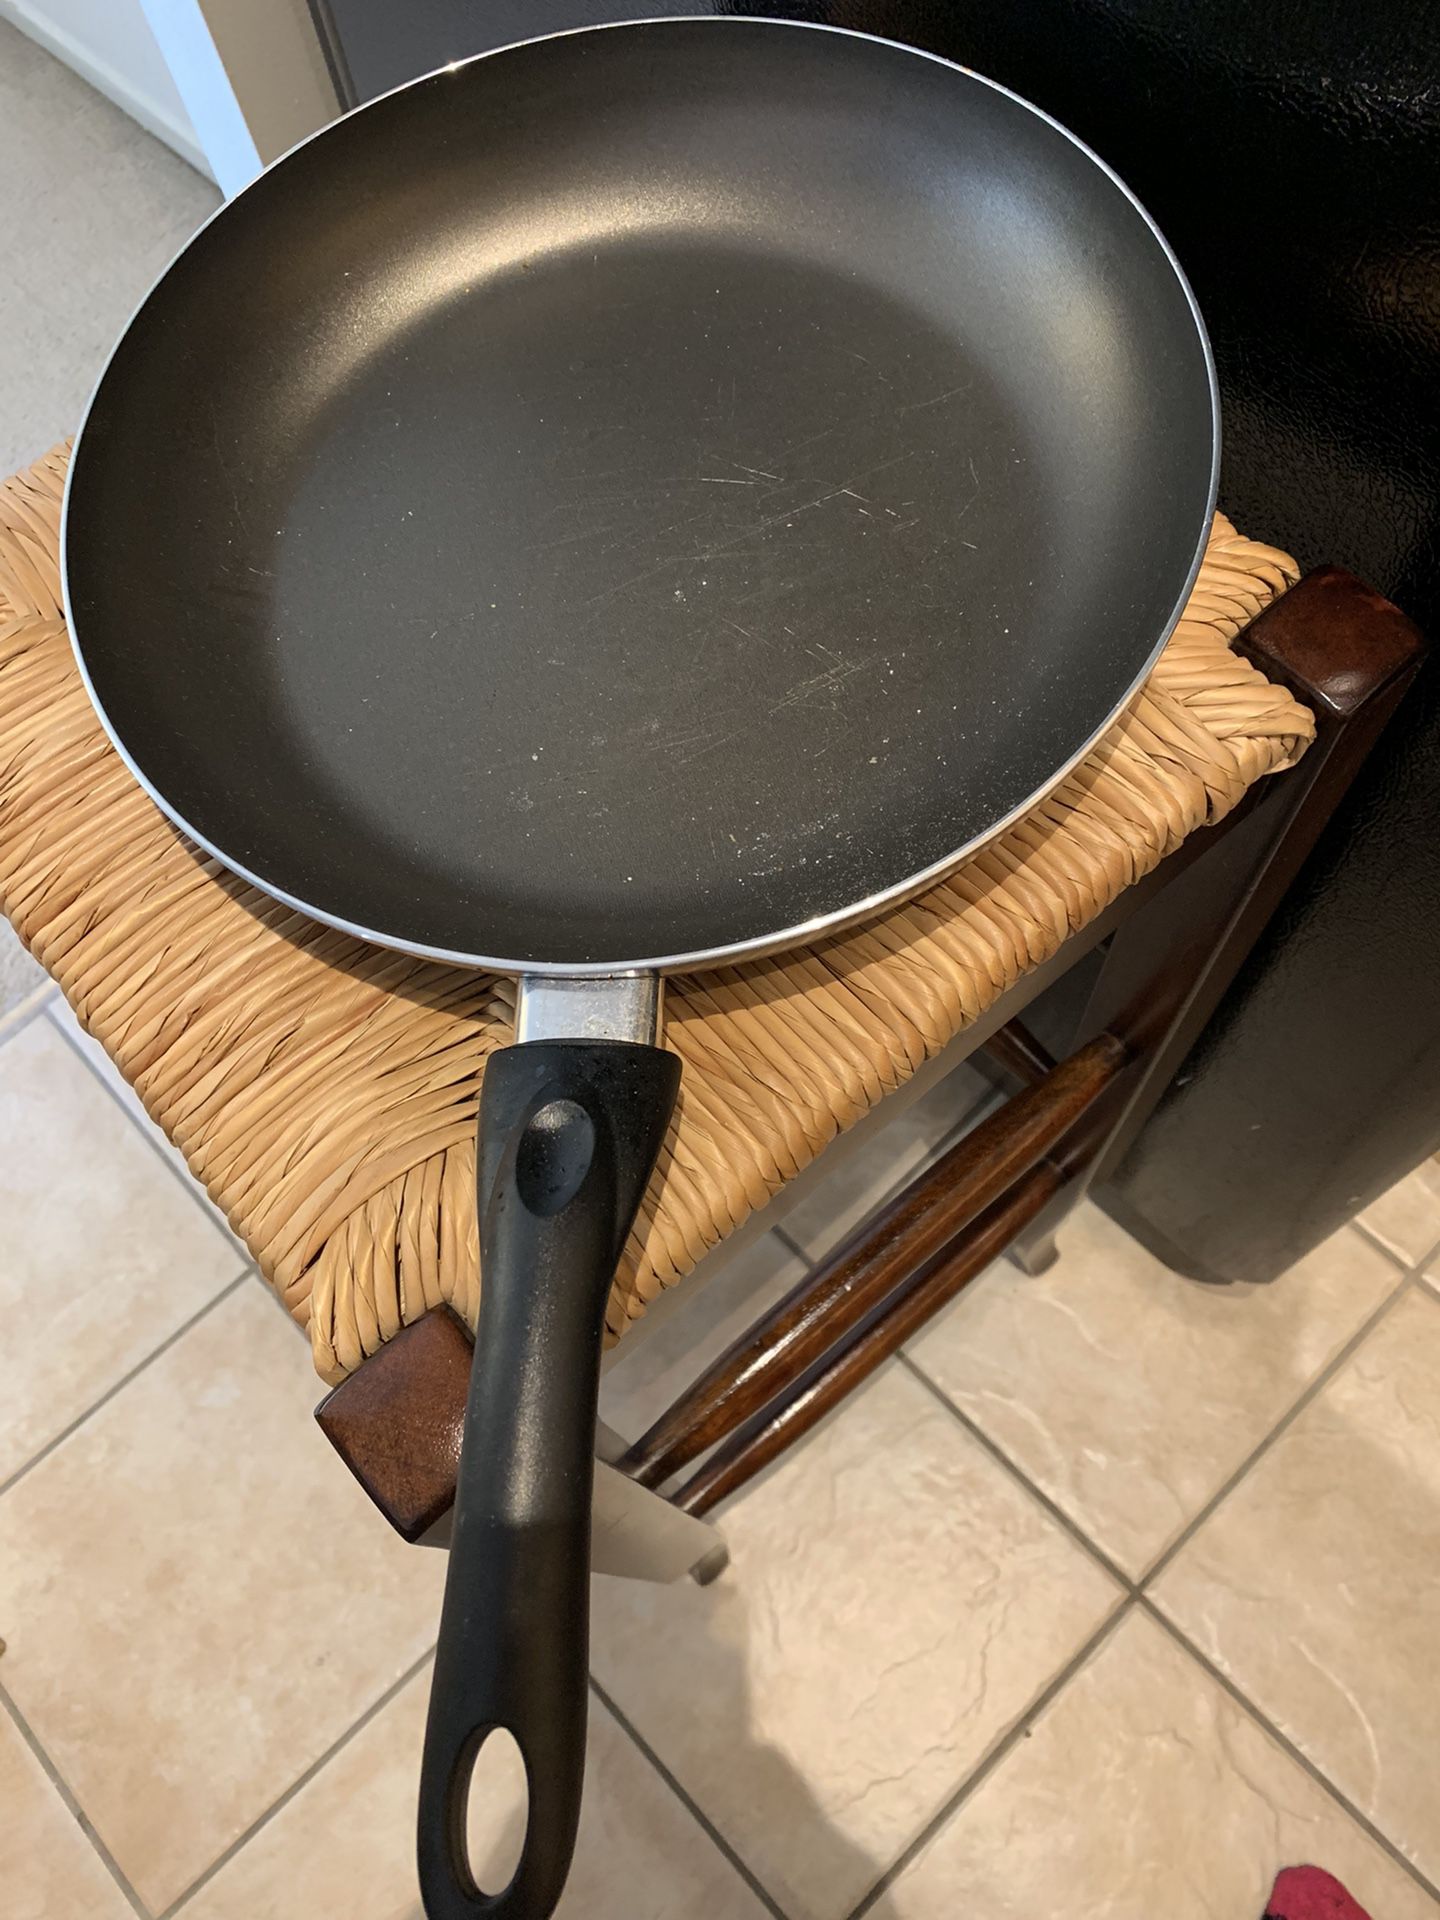 Large cooking pan